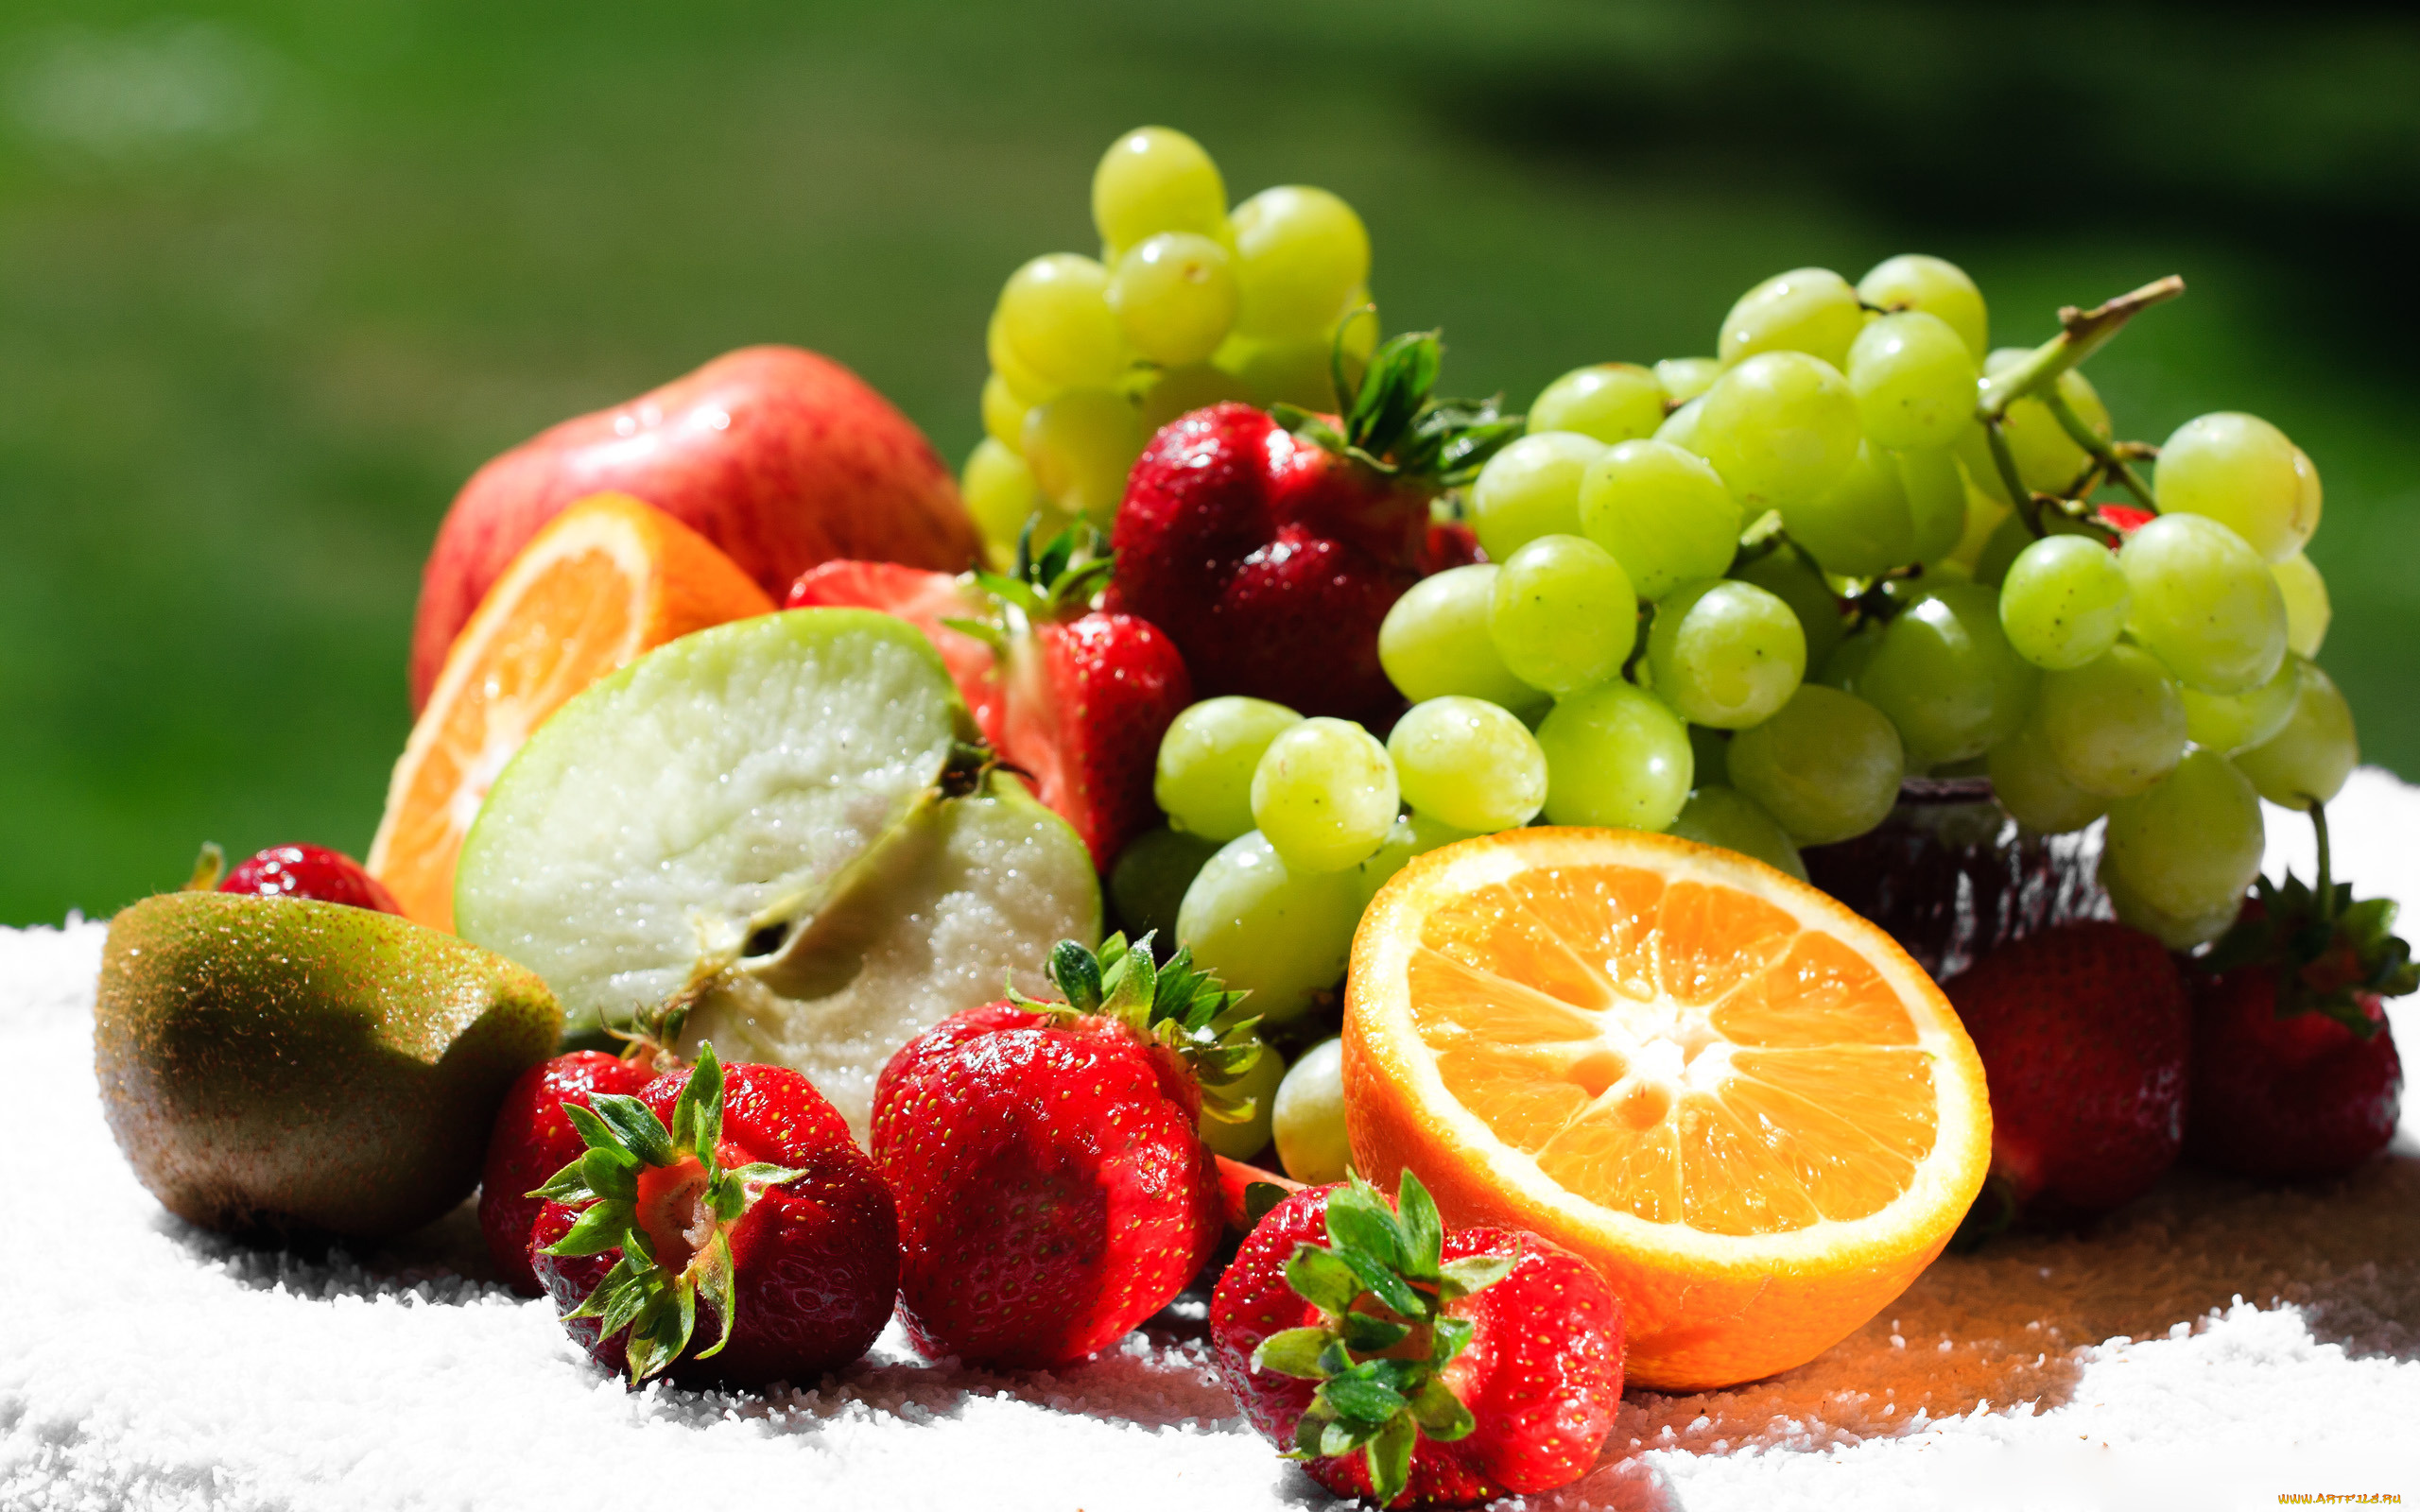 еда, фрукты, ягоды, виноград, киви, лимон, клубника, ягода, яблоко, апельсин